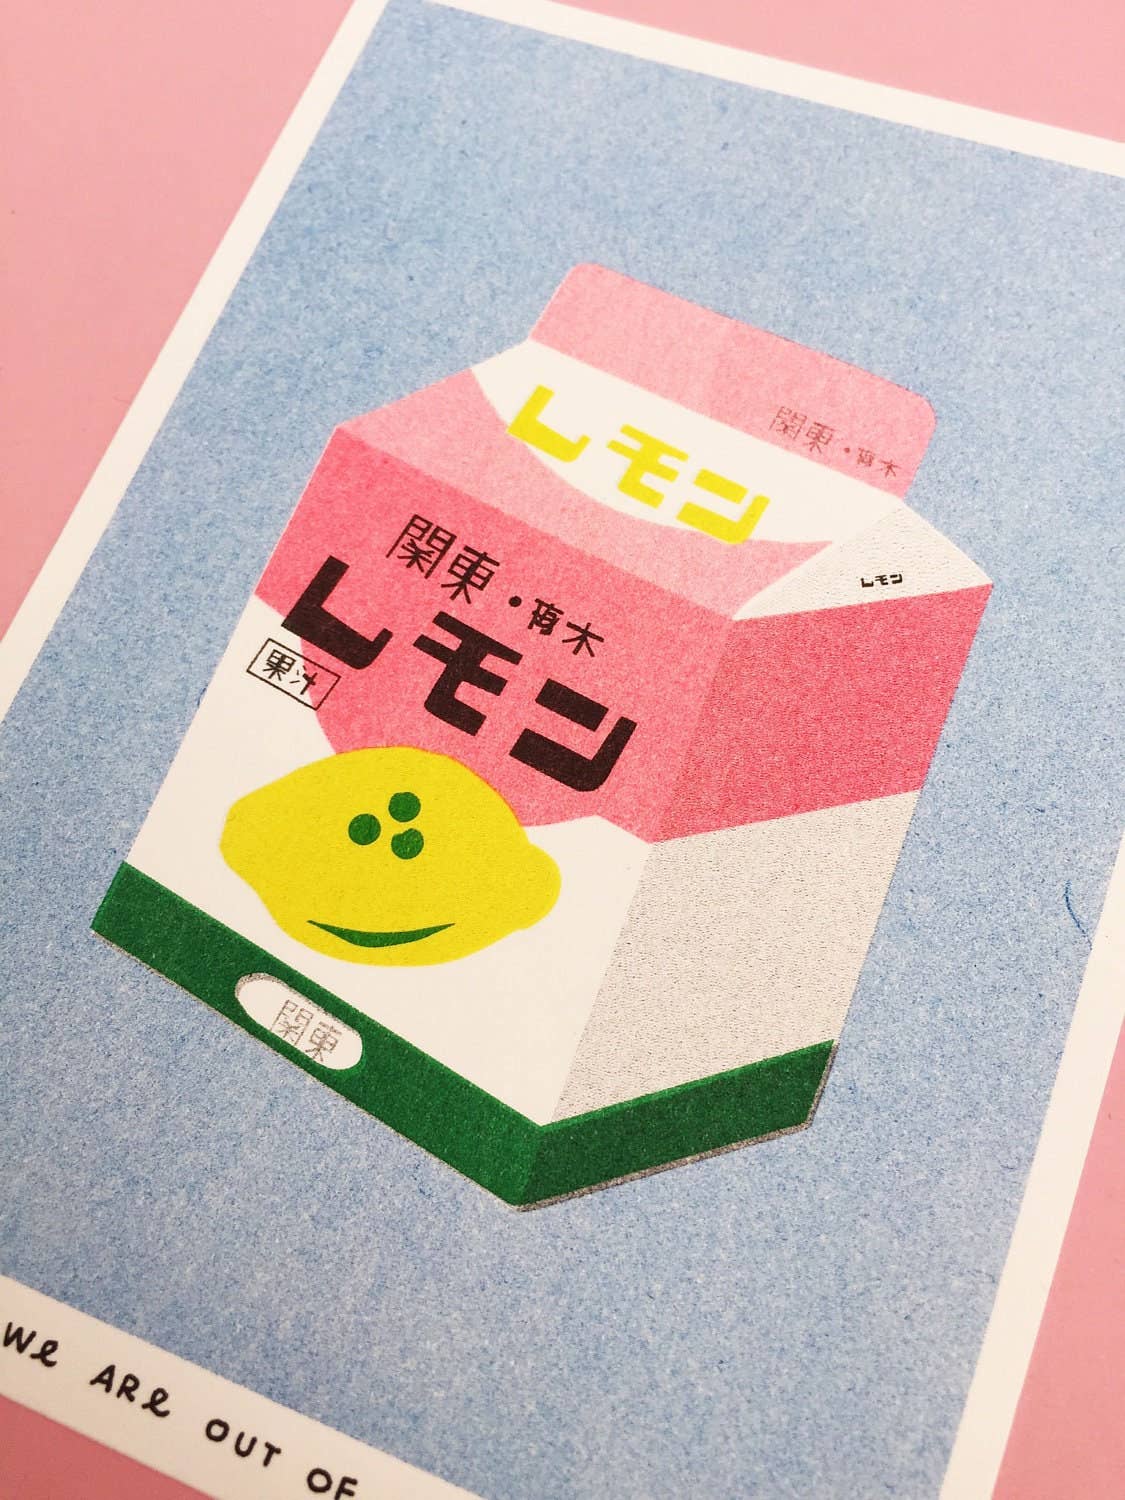 A risograph print of a box of lemon milk